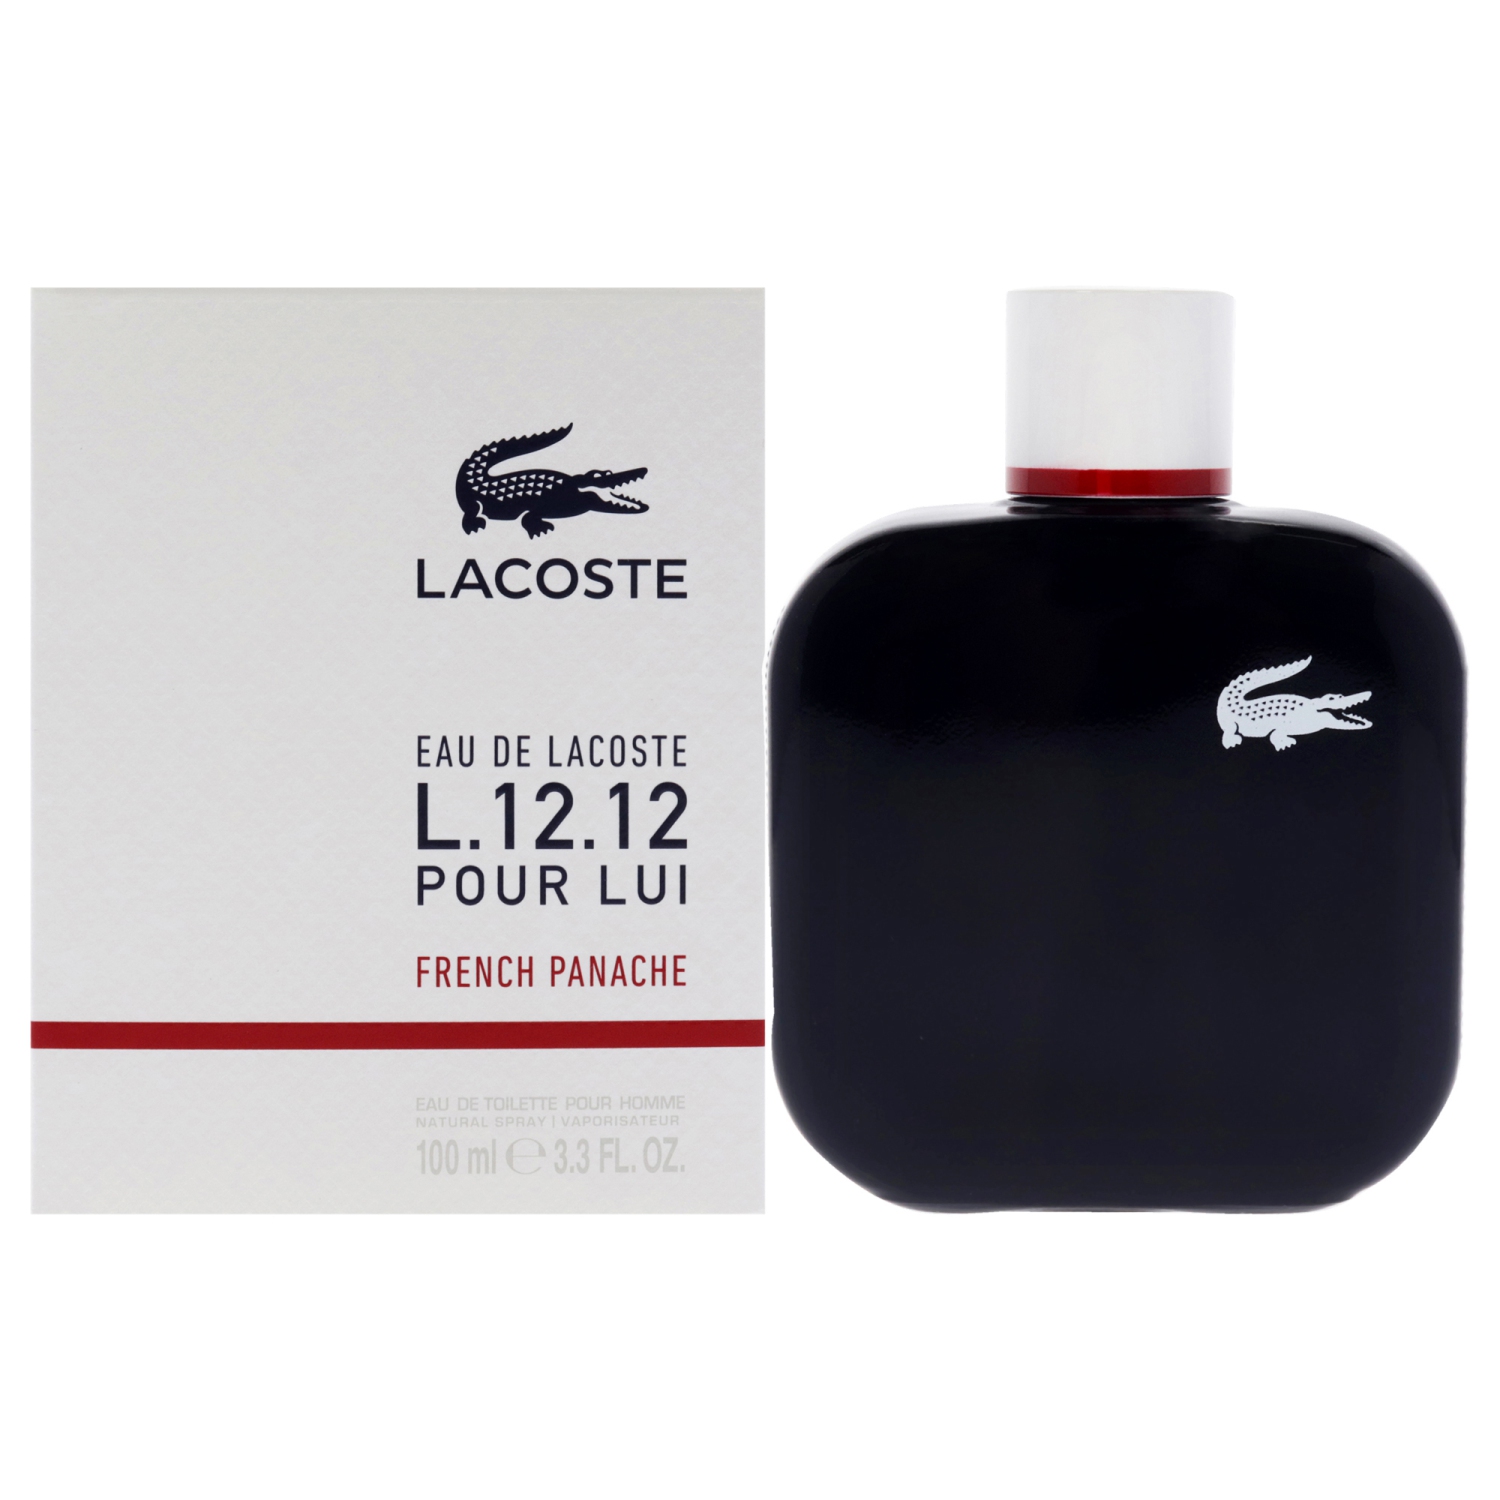 Eau De Lacoste L.12.12 Pour Lui French Panache Eau De Toilette Spray By Lacoste